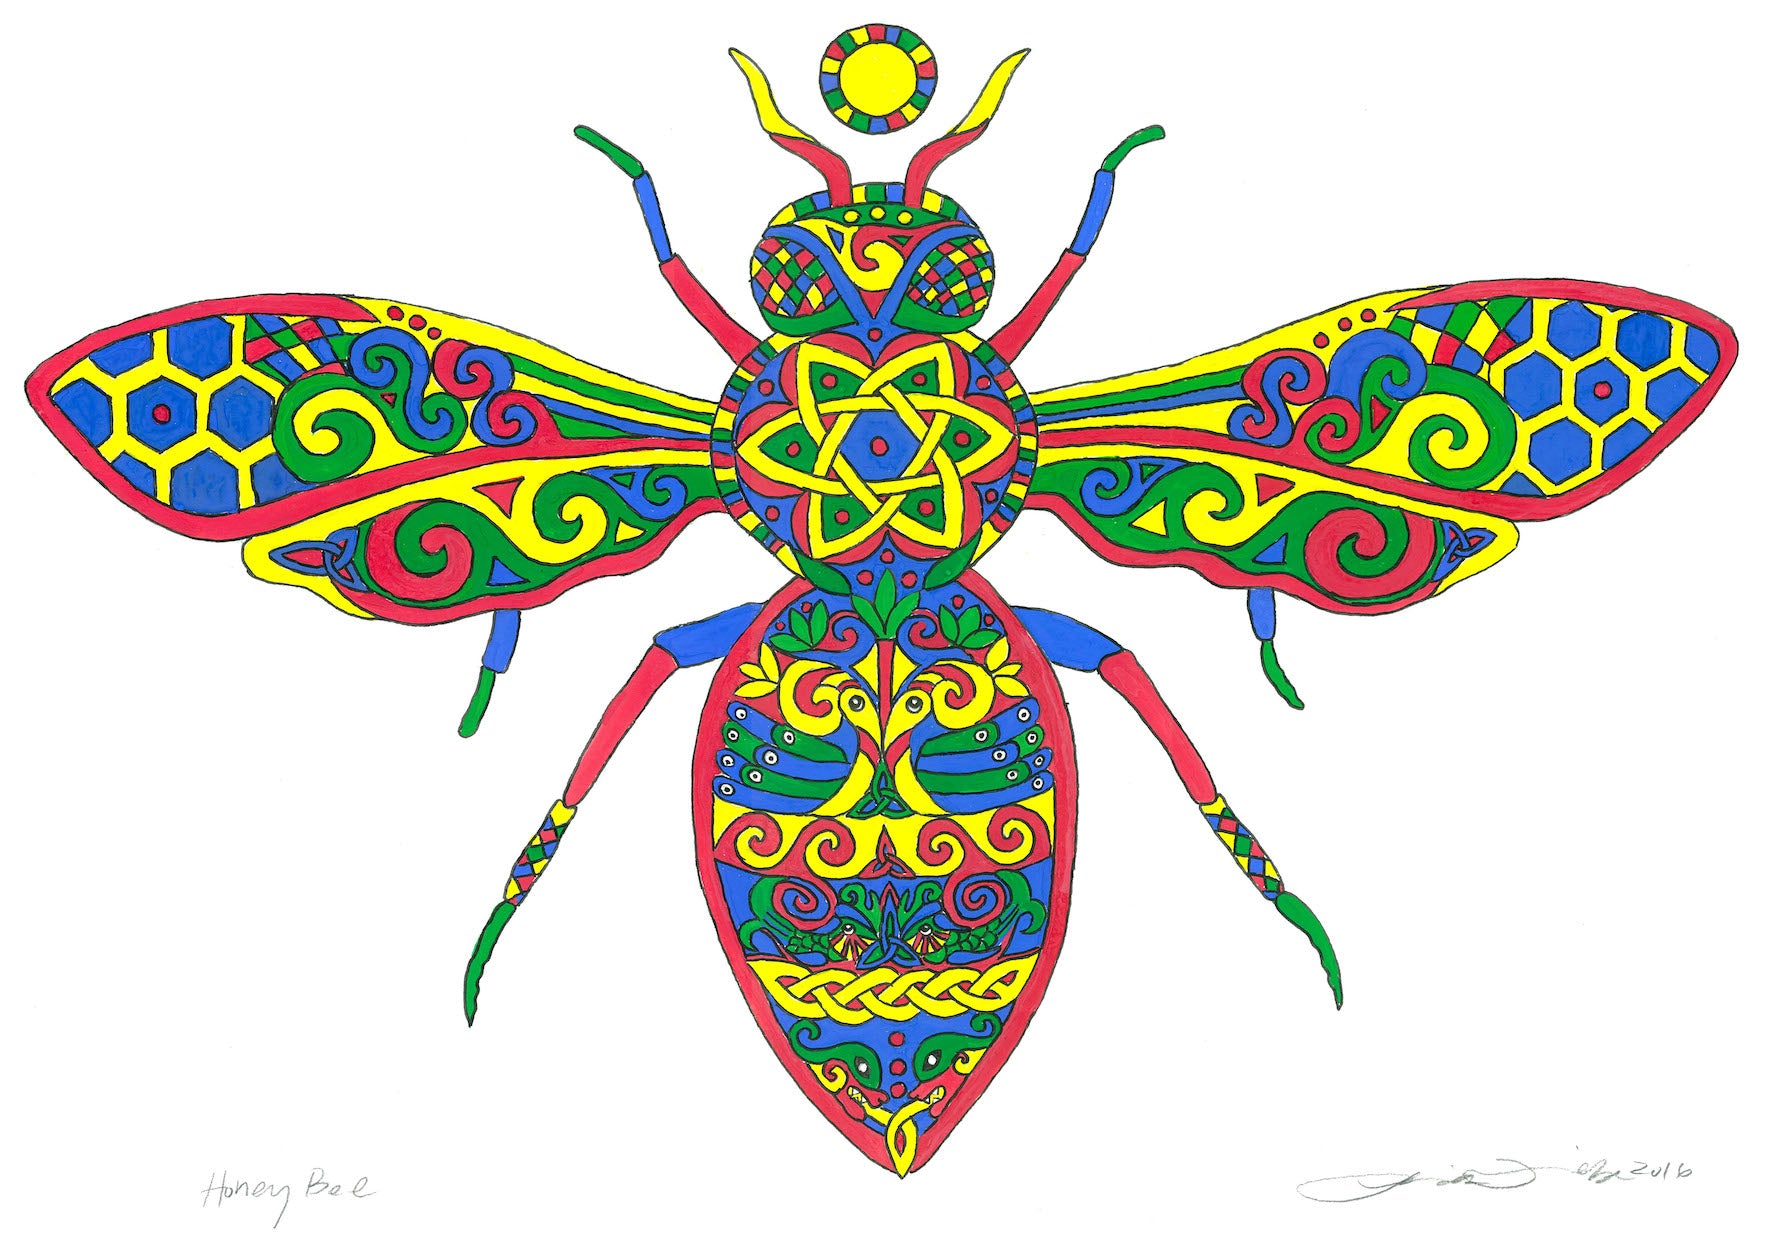 2016 Celtic Festival Fine Art Print: The Honey Bee